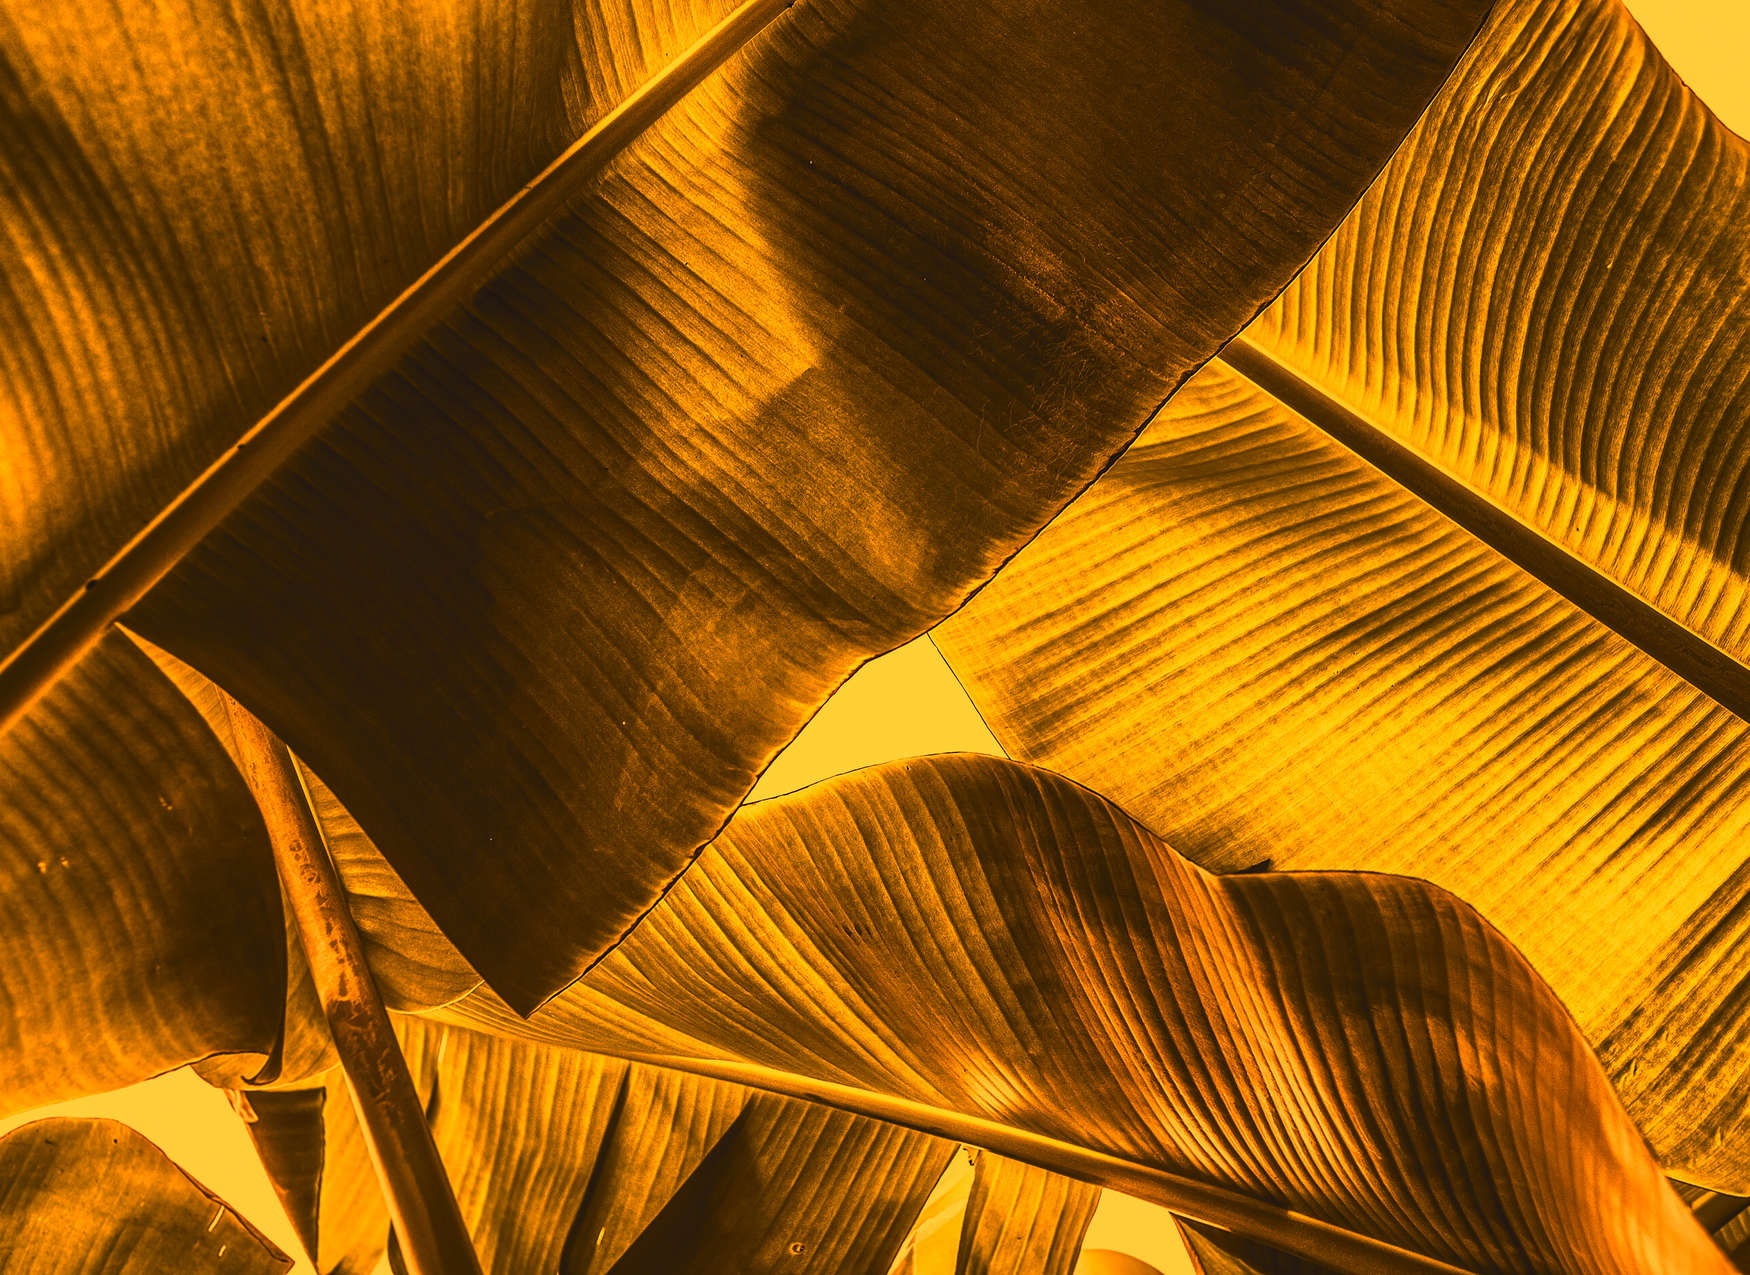             Tropische Blätter Detail-Bildmotiv – Orange, Gelb
        